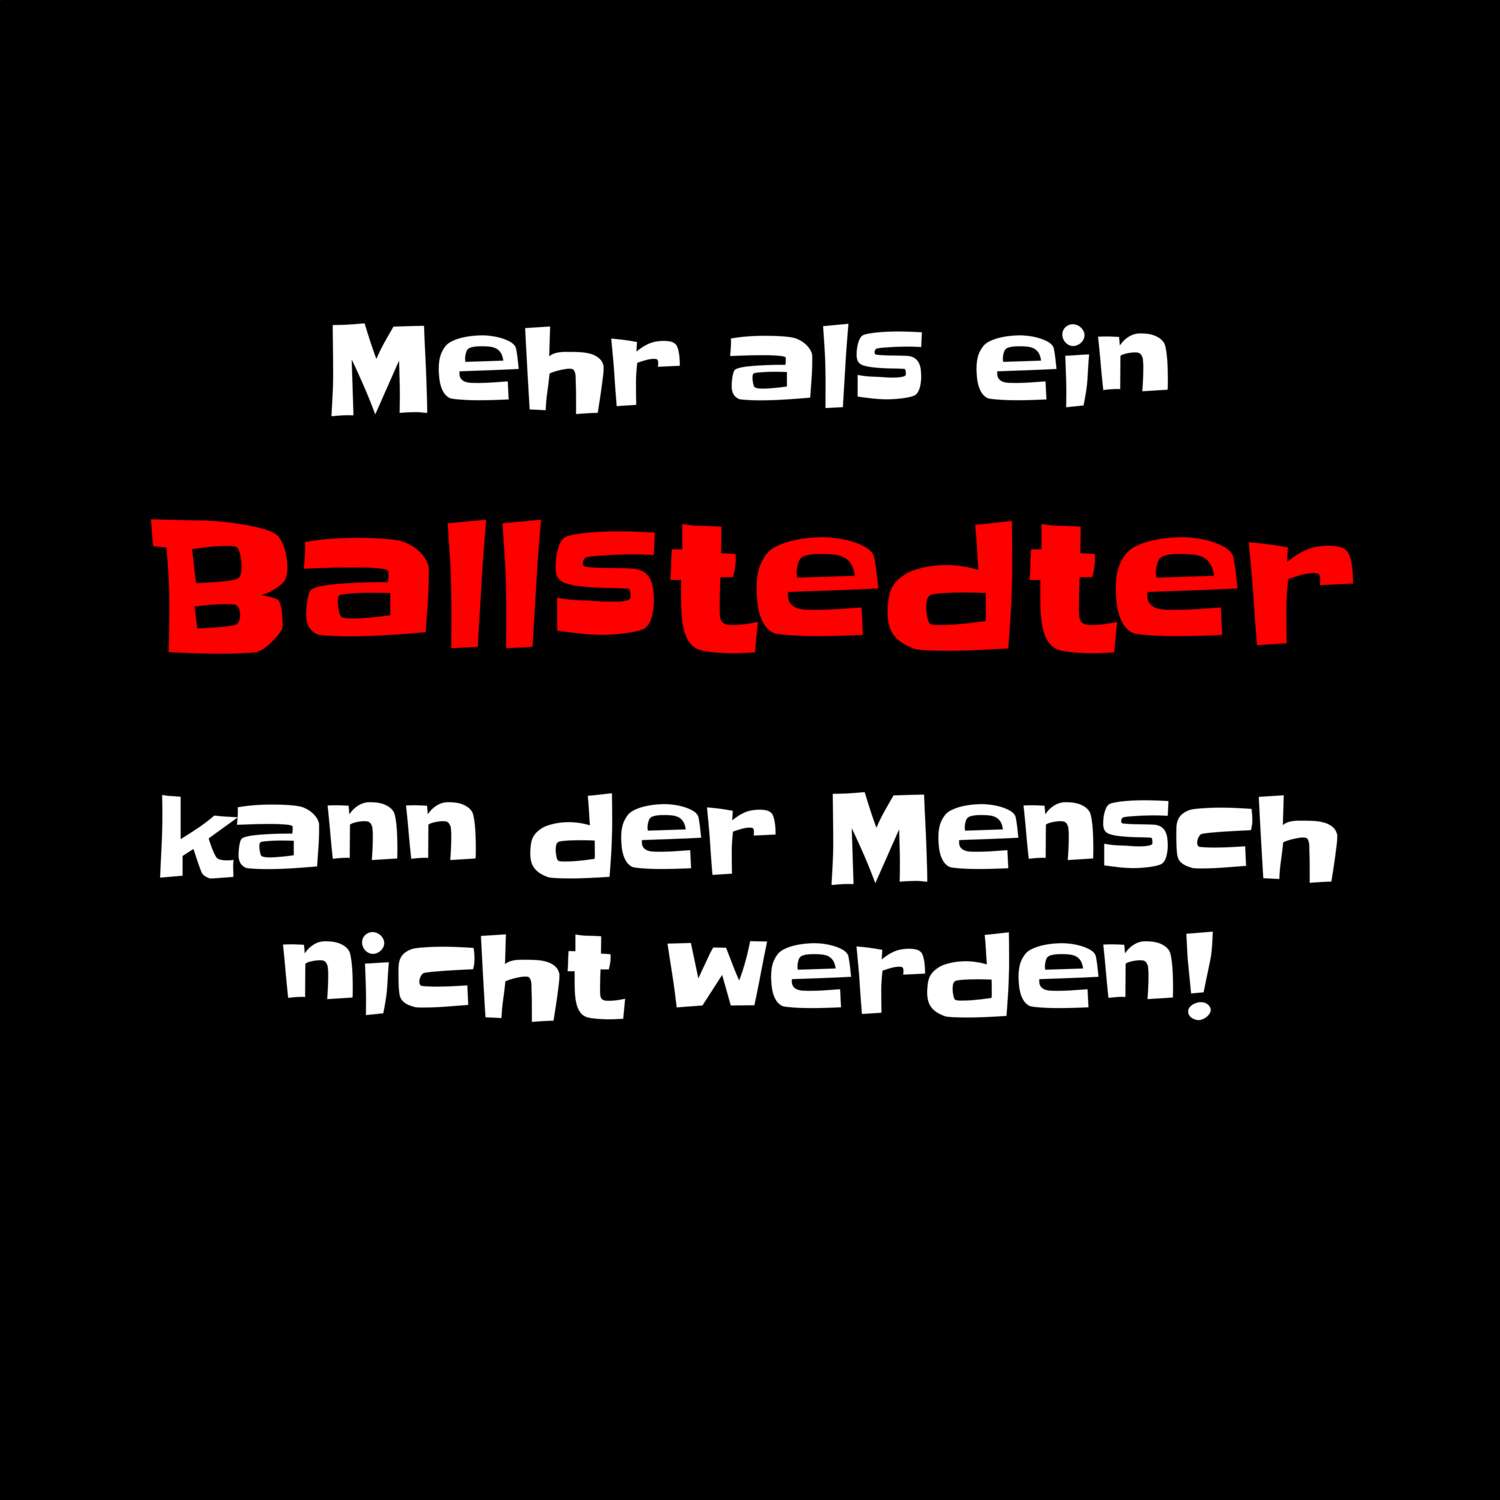 Ballstedt T-Shirt »Mehr als ein«